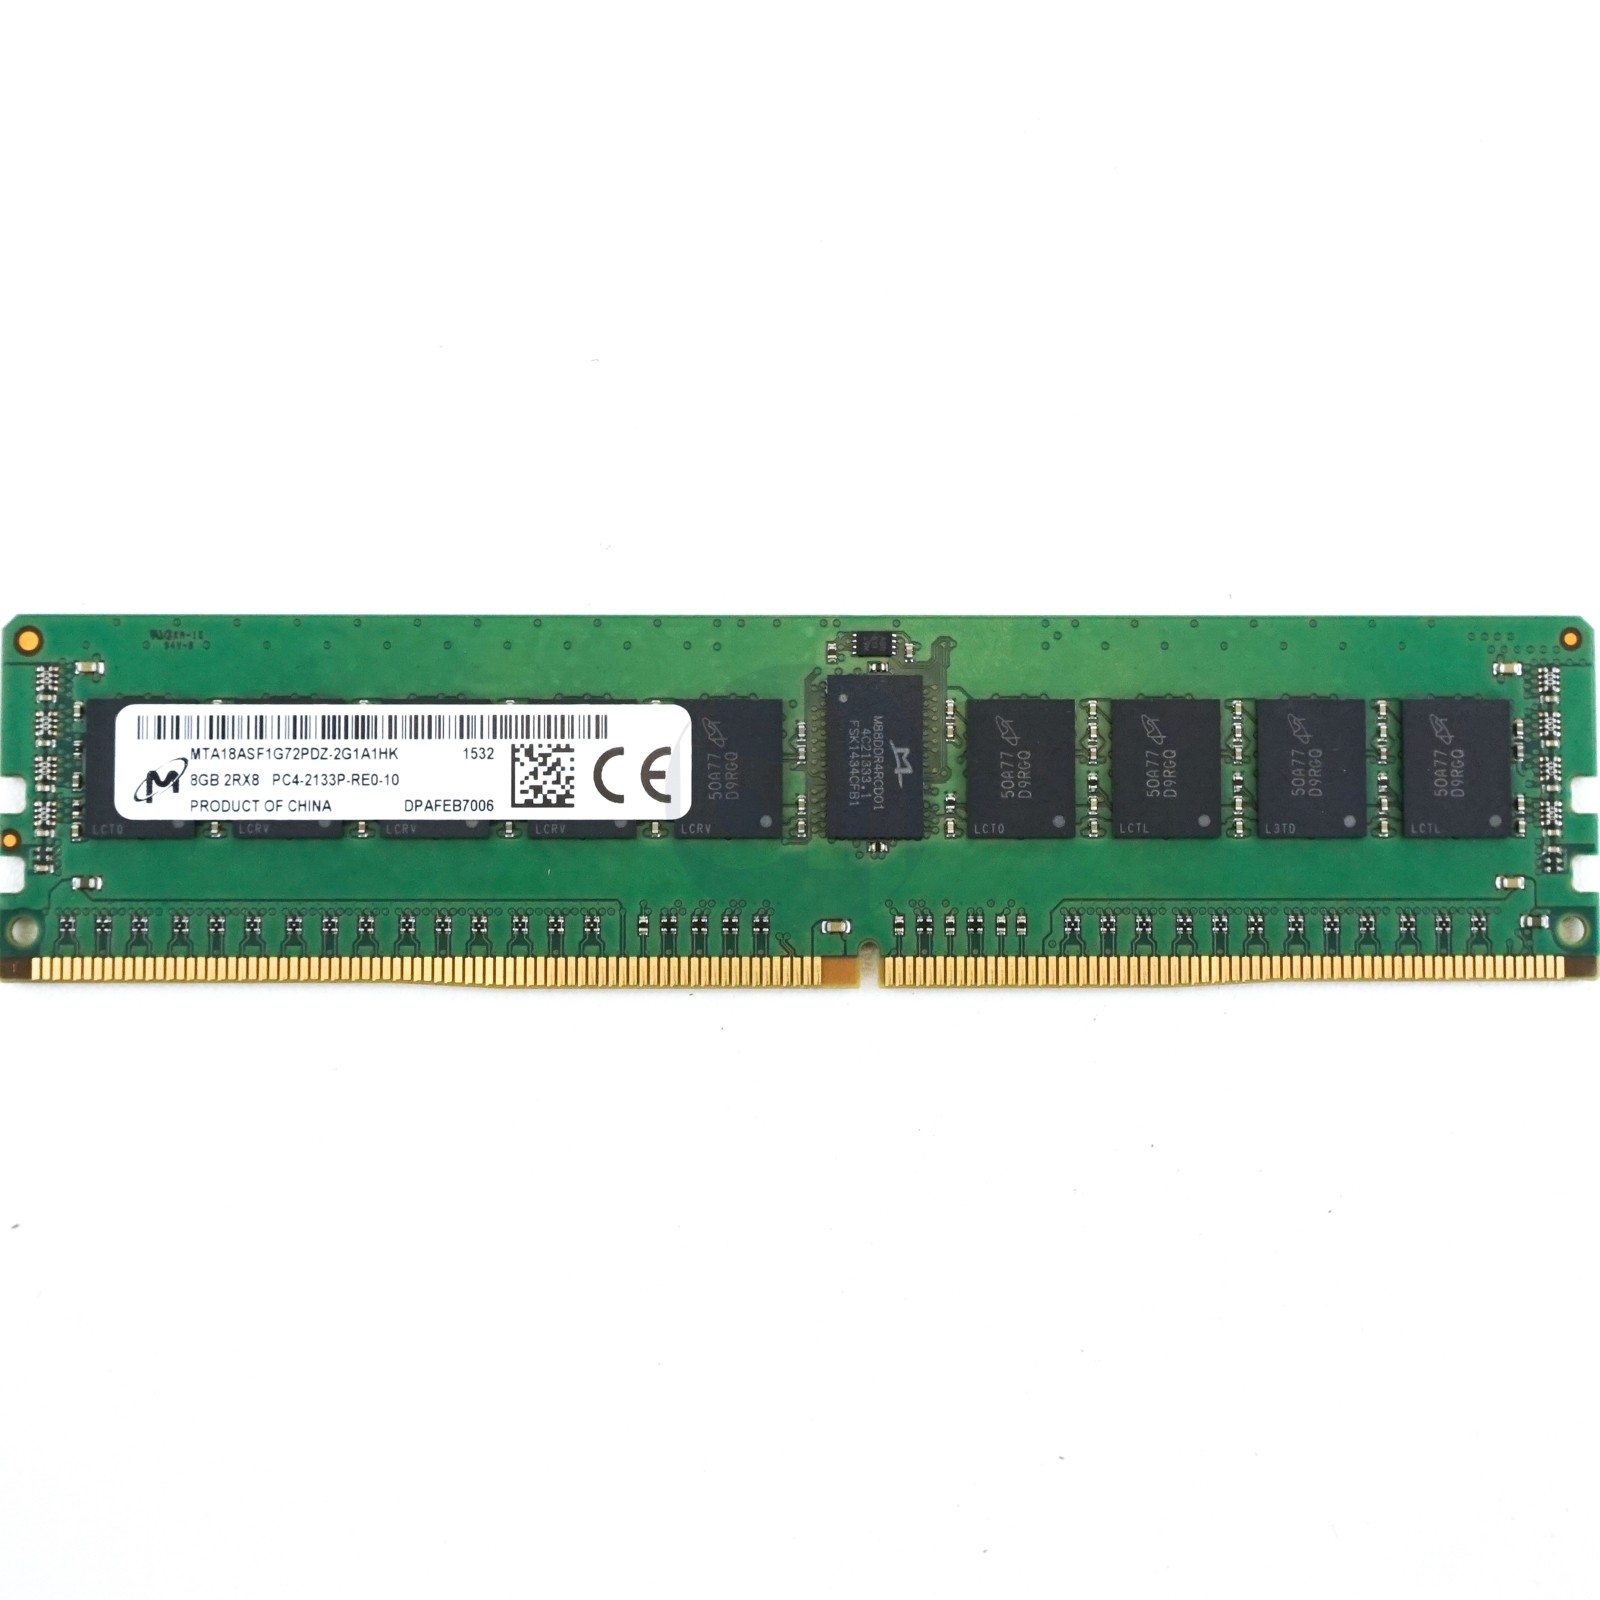 Micron - 8GB PC4-17000P-R (DDR4-2133Mhz, 2RX8)